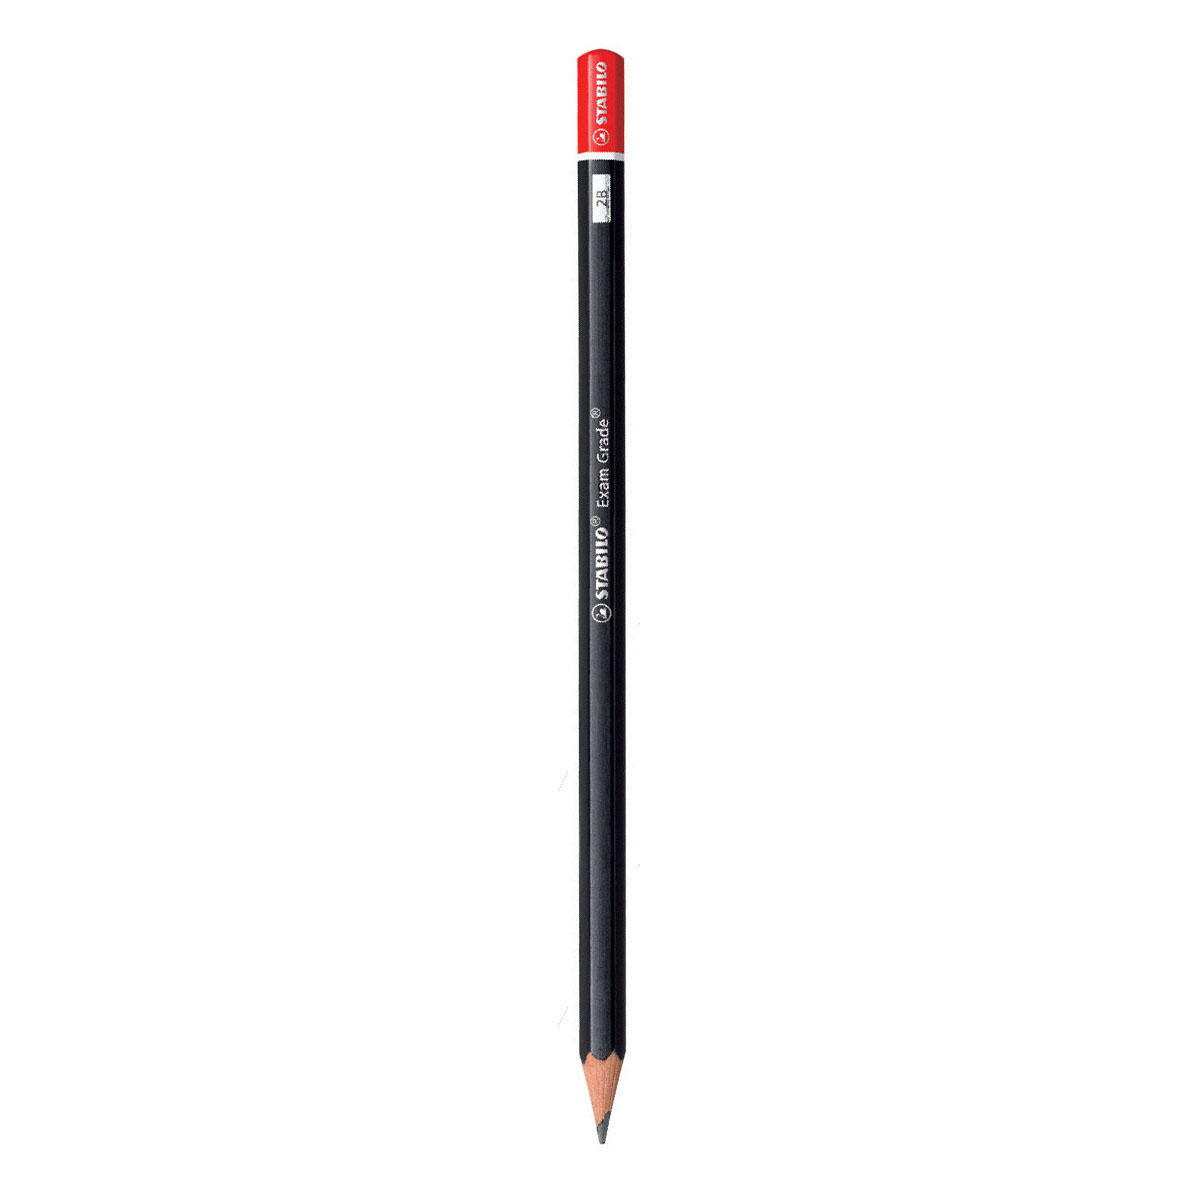 Bút chì gỗ STABILO Exam Grade 288 - Bút chì HB thân lục giác đen đuôi đỏ (PC288-HB)